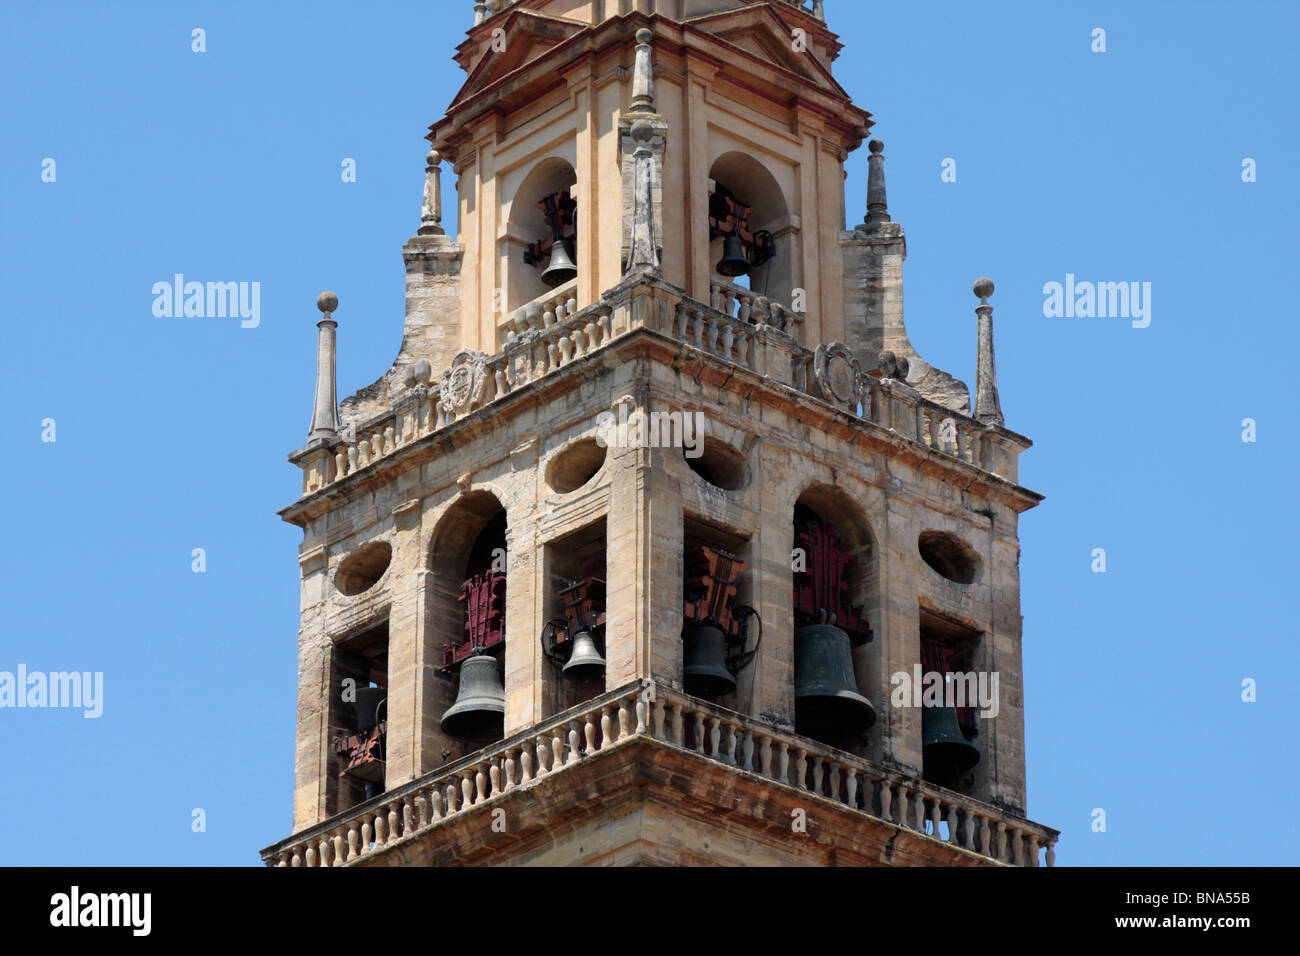 Le beffroi de la cathédrale de Cordoue Andalousie Espagne Europe Banque D'Images